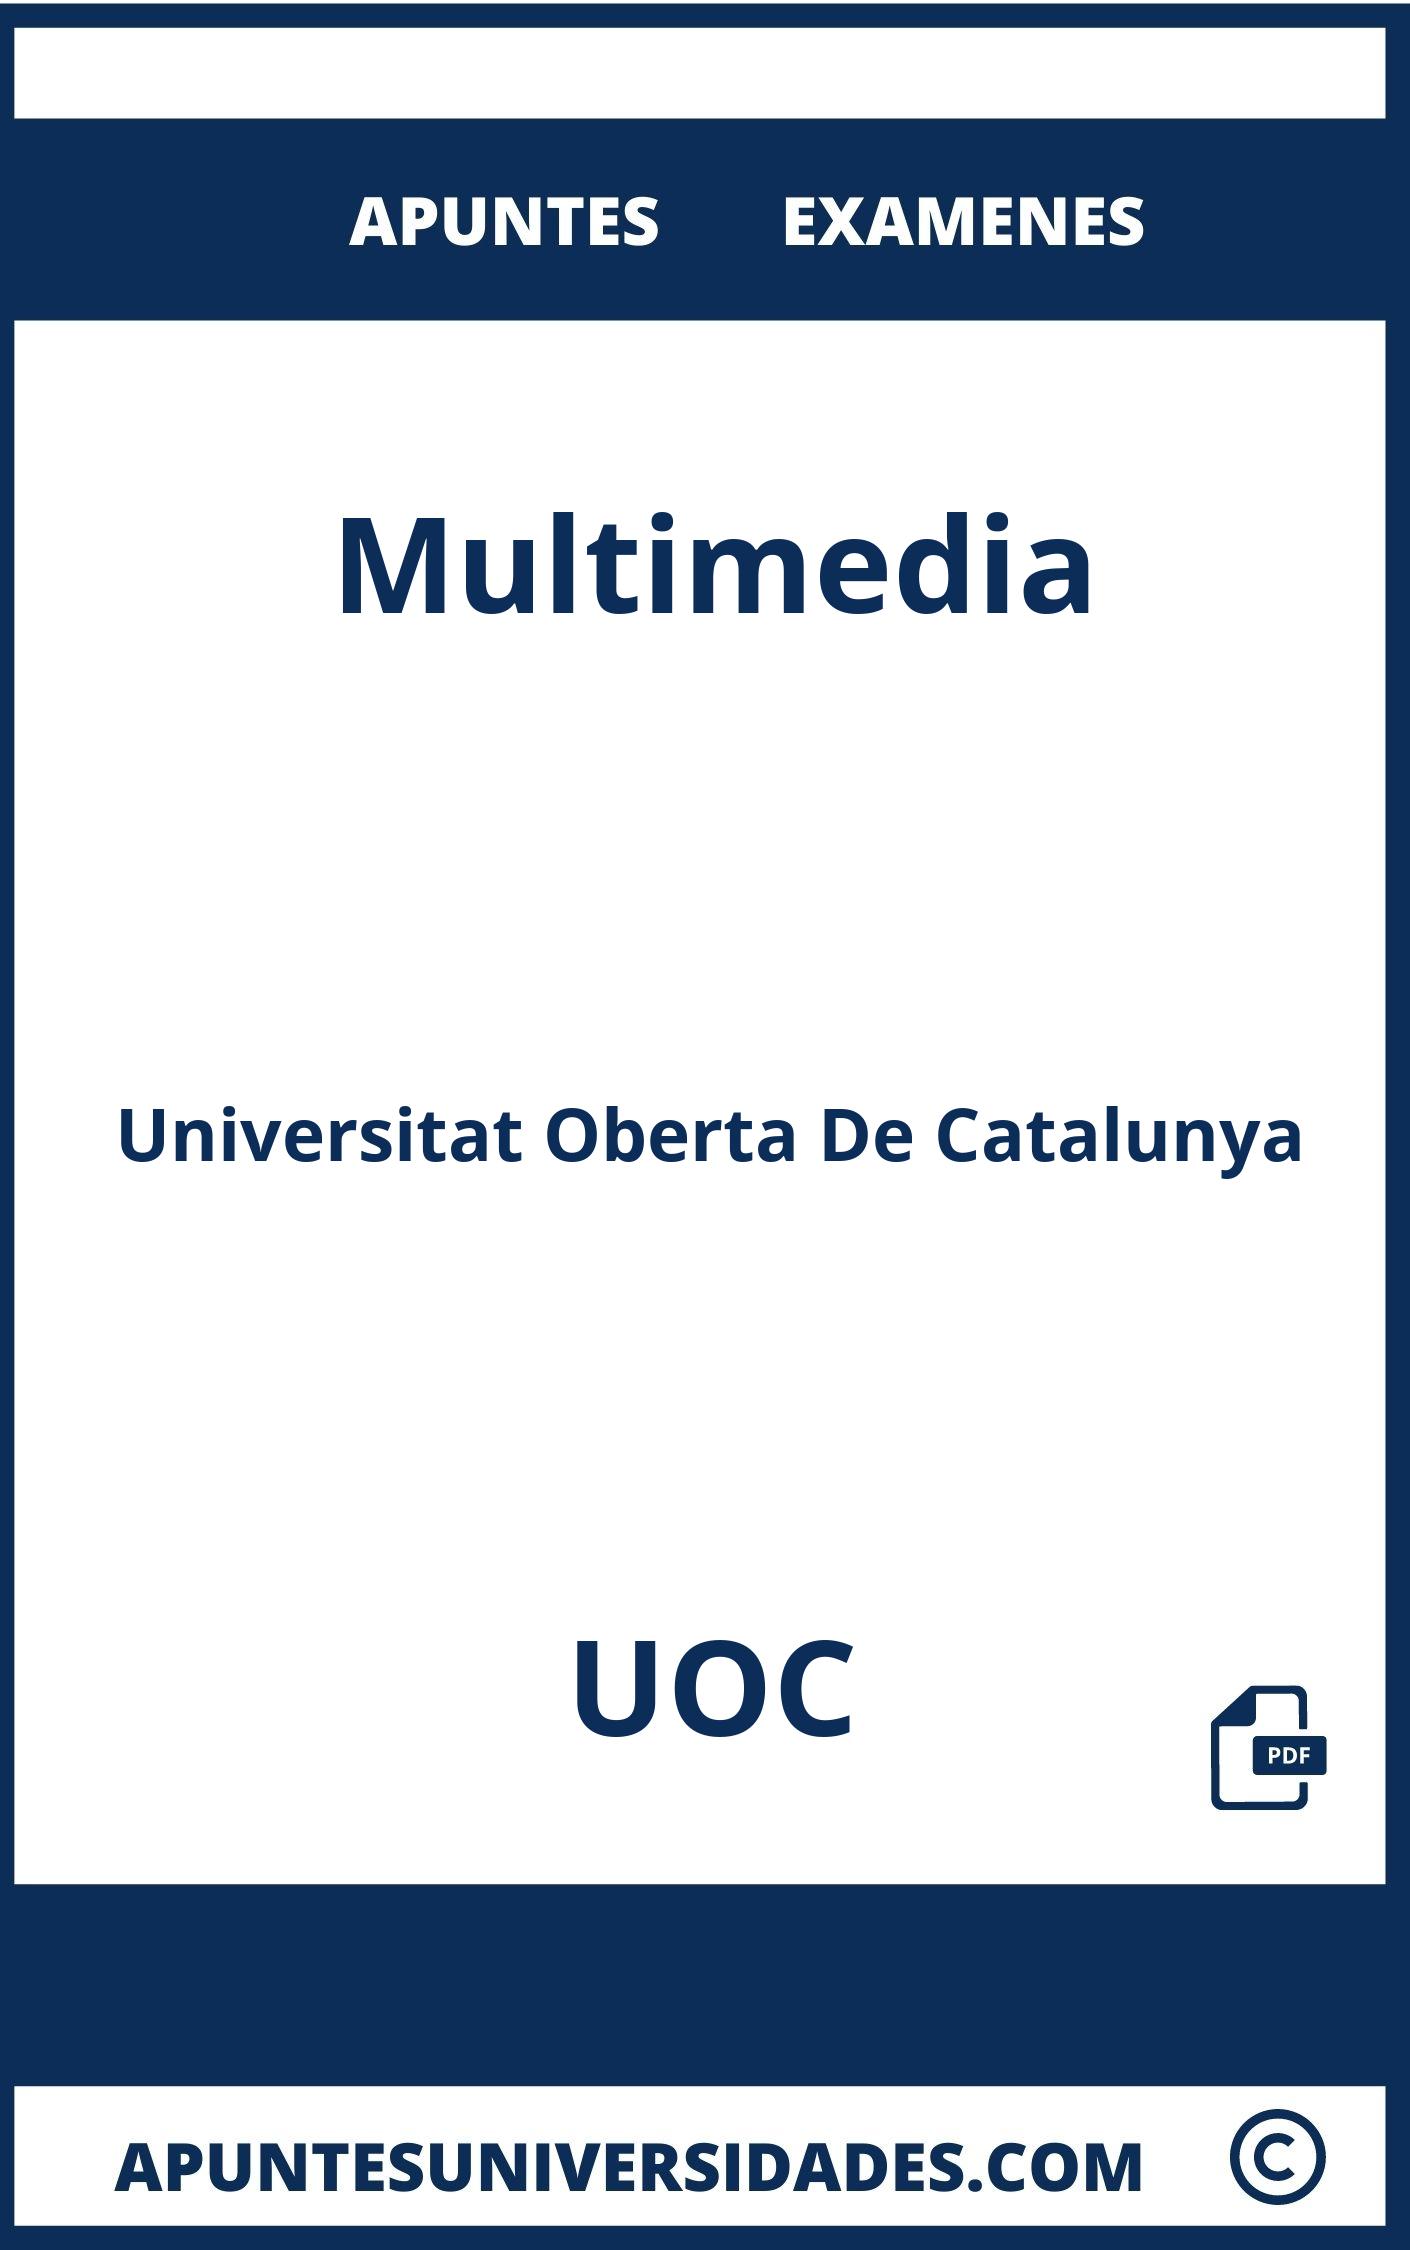 Apuntes y Examenes de Multimedia UOC